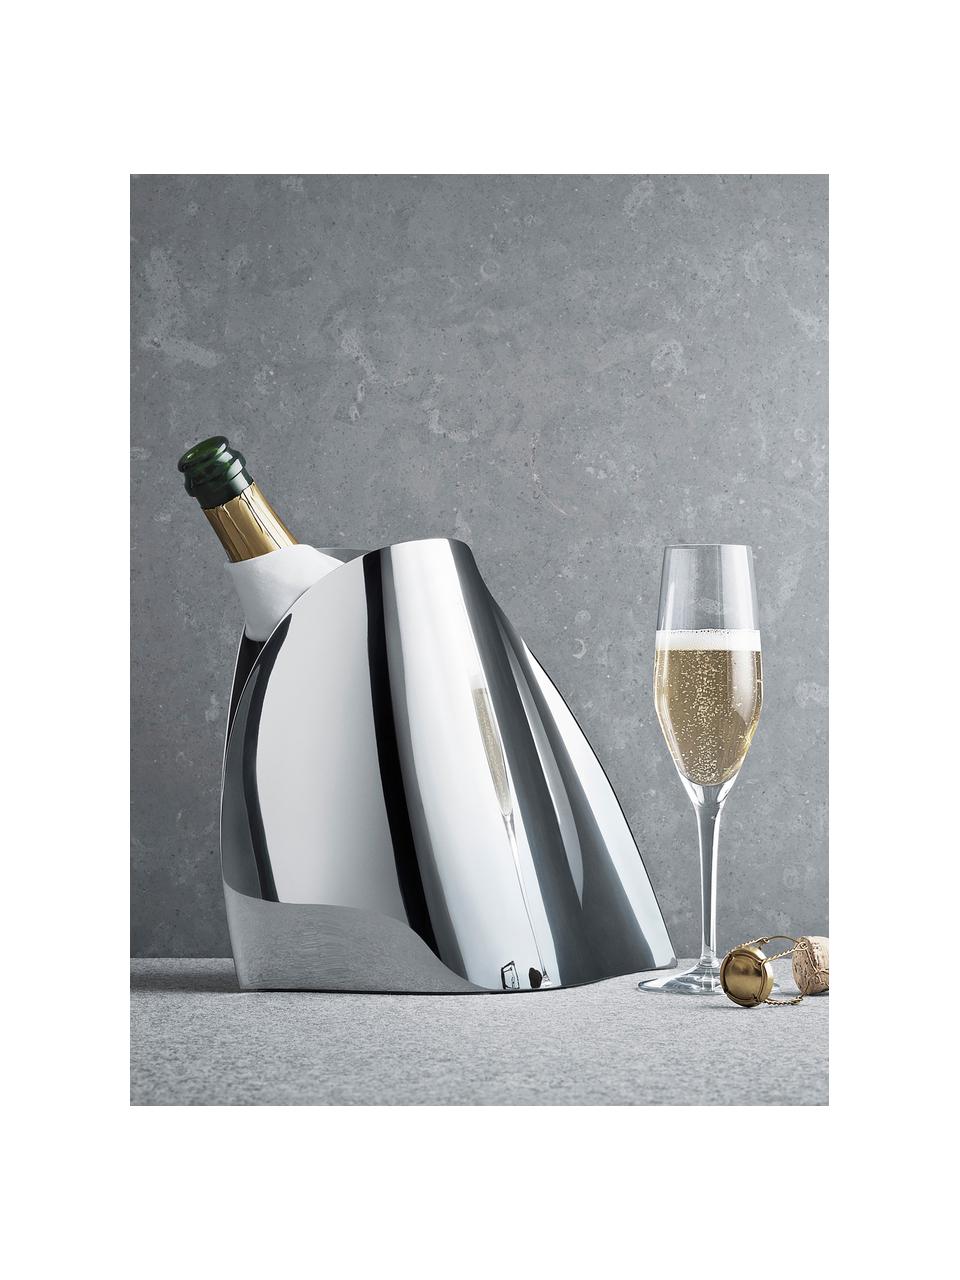 Seau à champagne en acier inoxydable de forme organique Indulgence, Acier inoxydable, poli, Argenté, polissage haute brillance, larg. 28 x haut. 23 cm